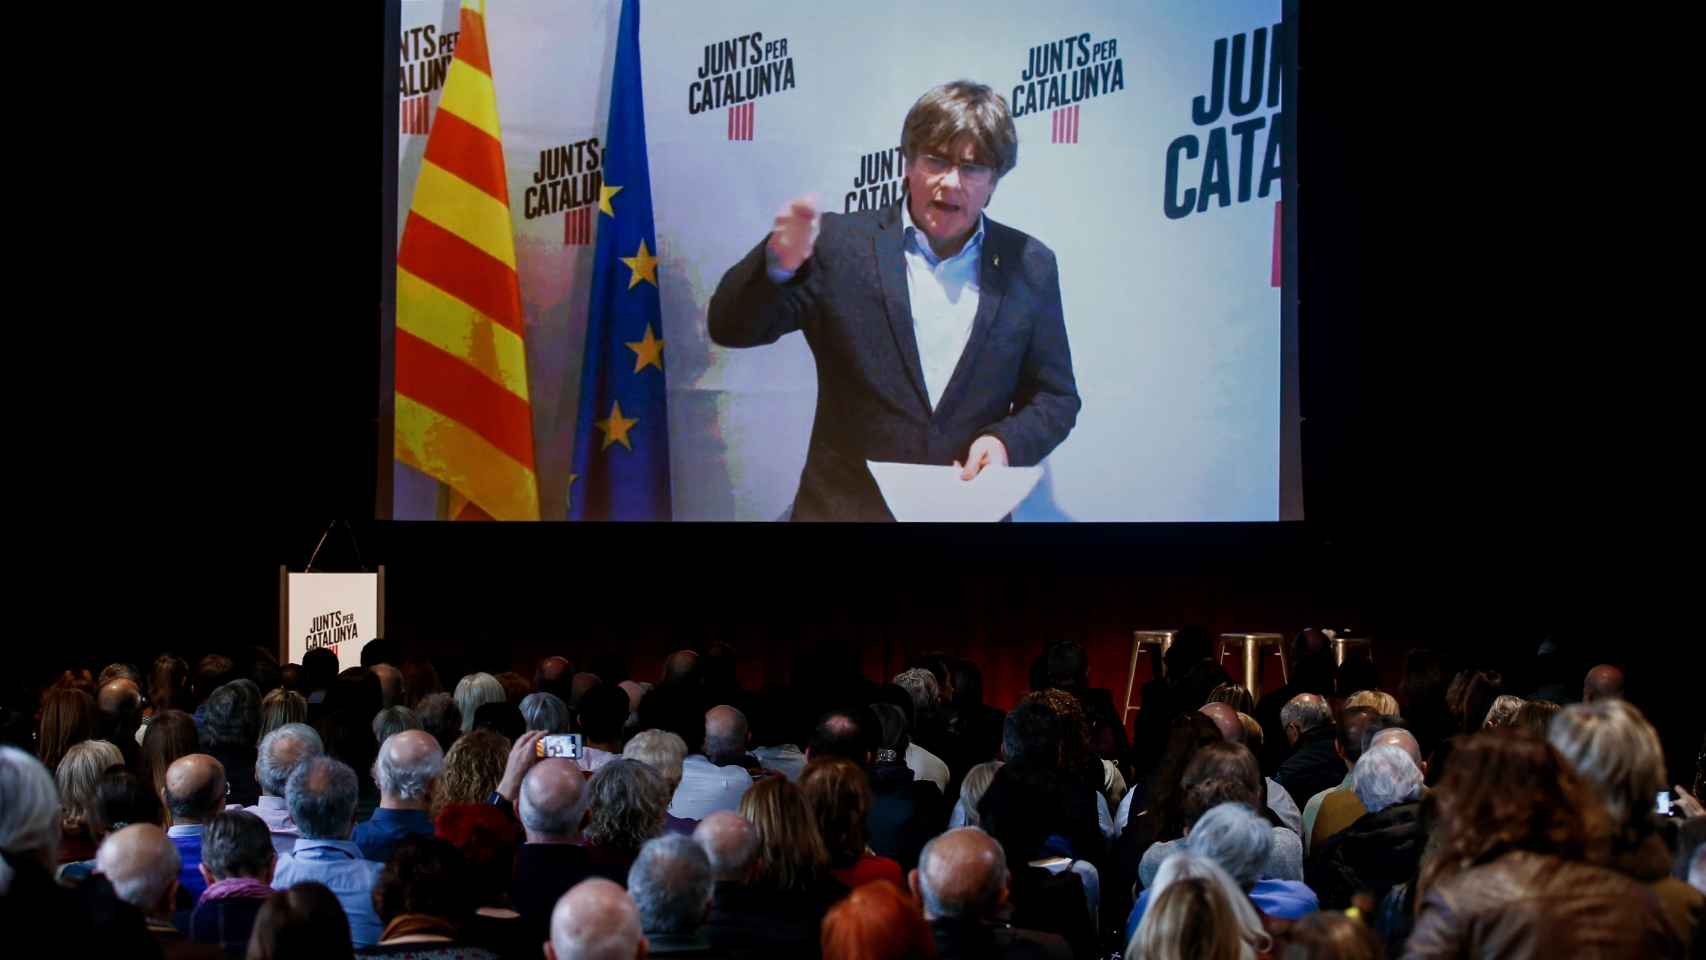 Carles Puigdemont interviene por videoconferencia desde Waterloo en el acto de JxCat en El Born de Barcelona.